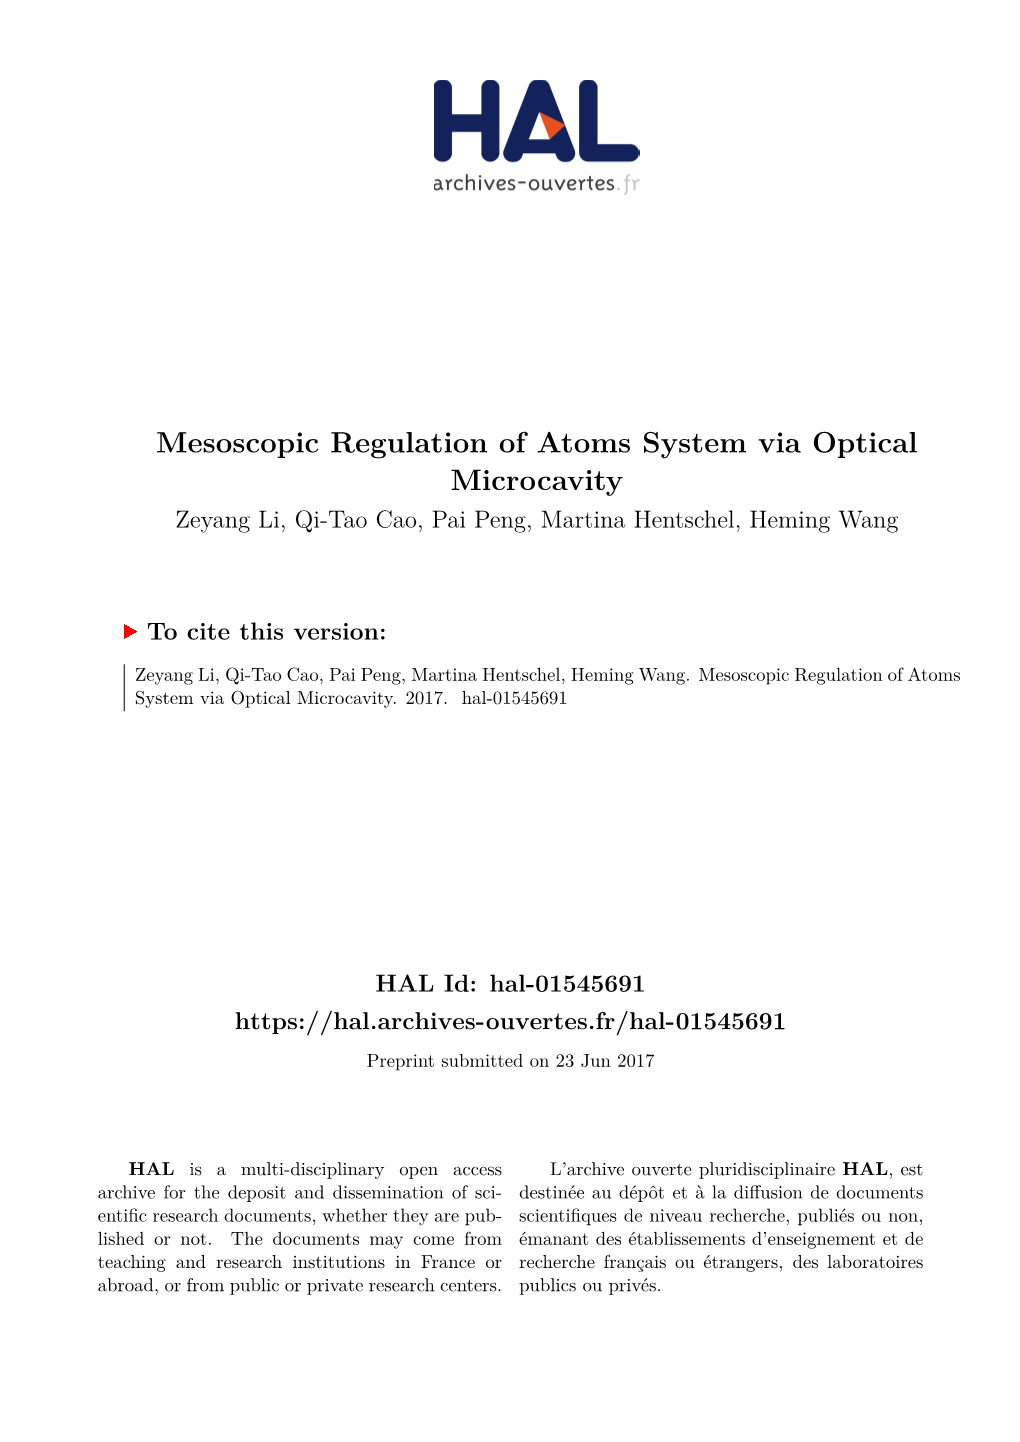 Mesoscopic Regulation of Atoms System Via Optical Microcavity Zeyang Li, Qi-Tao Cao, Pai Peng, Martina Hentschel, Heming Wang